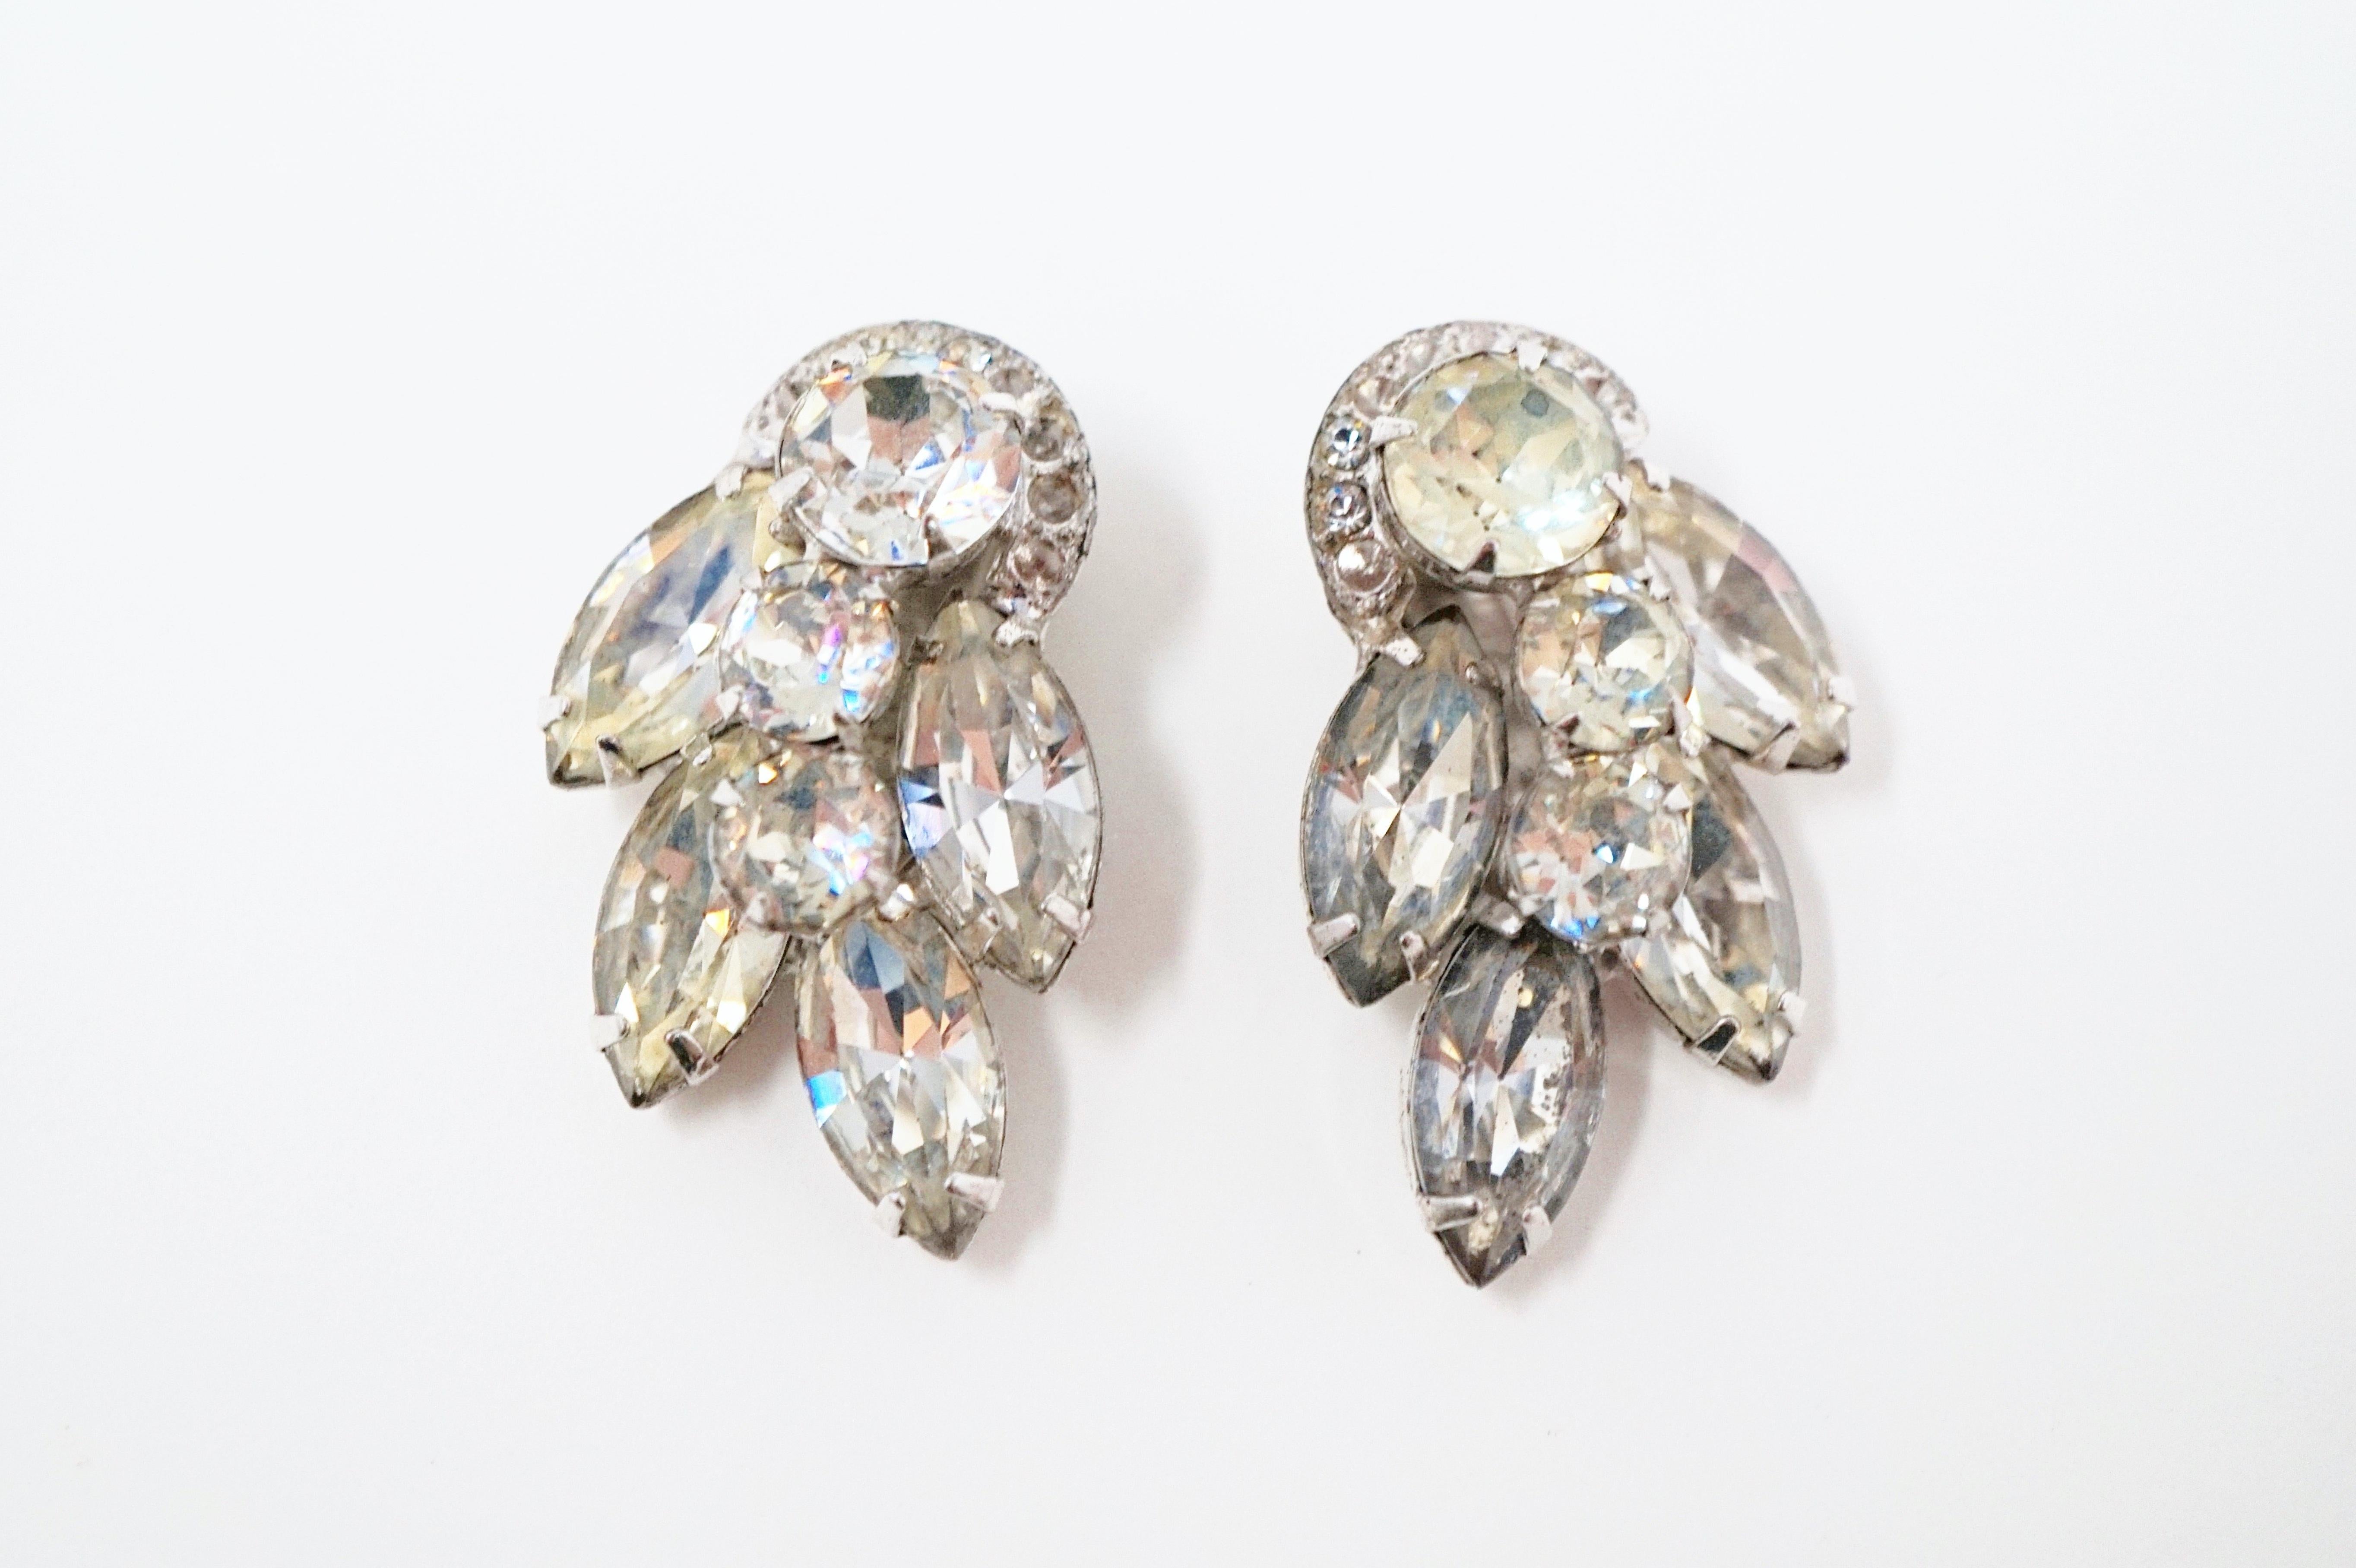 Eisenberg Jewelry Clip On Earrings Deals, 52% OFF | www.ingeniovirtual.com